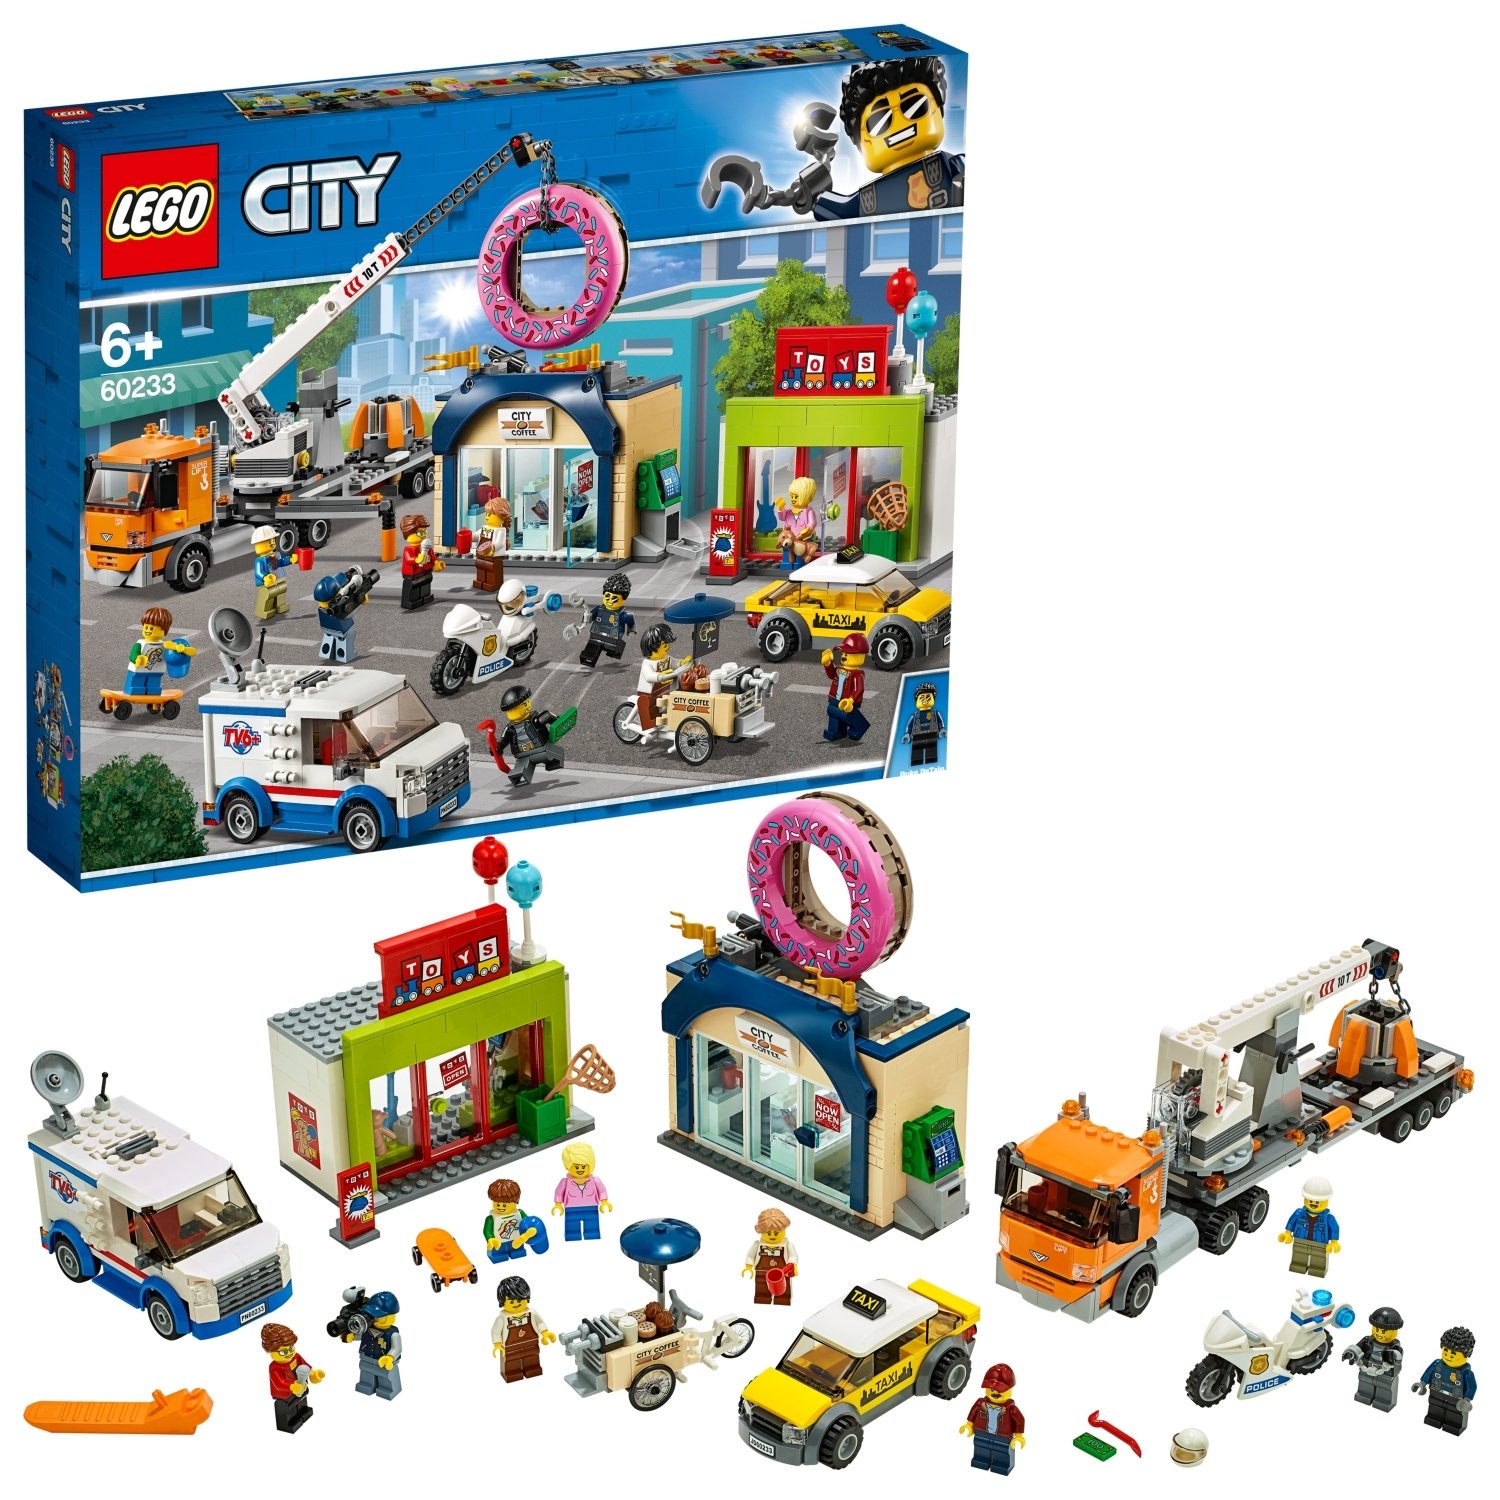 LEGO City Donut Shop Opening Playset - 60233